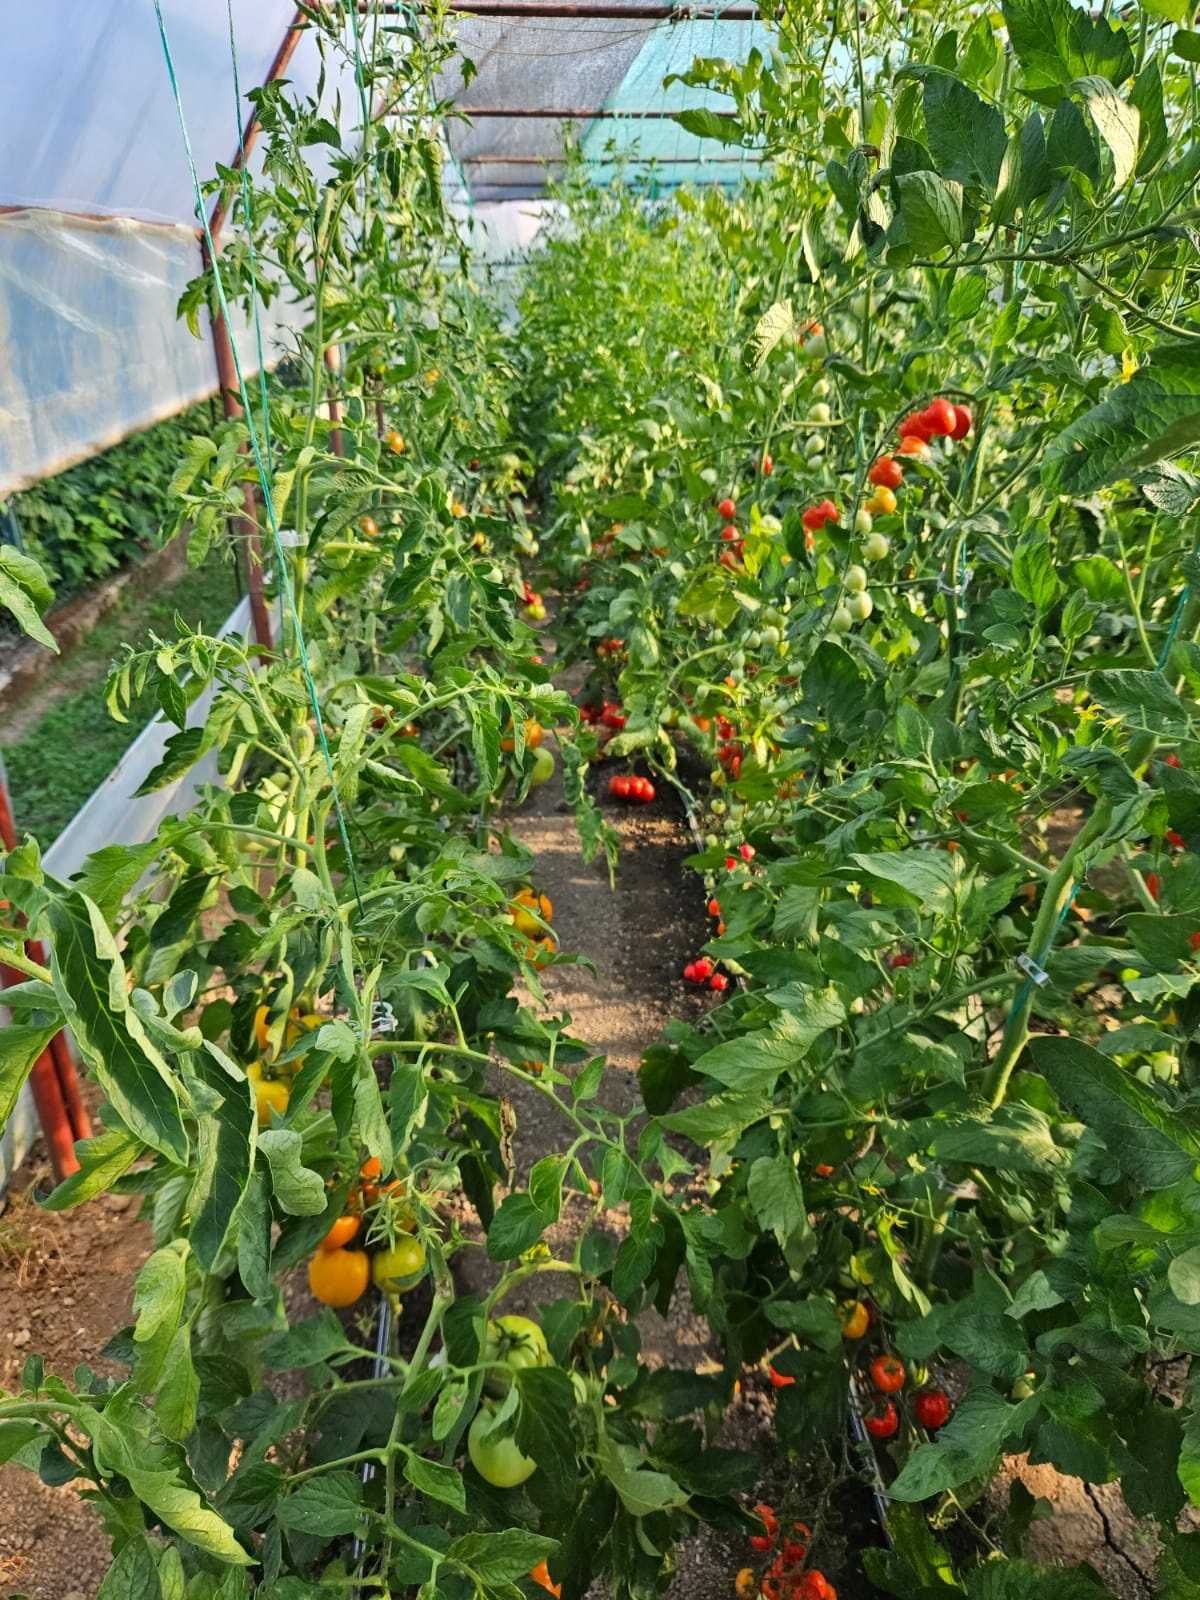 Solarii(sere) pentru cultivarea de legume sau flori